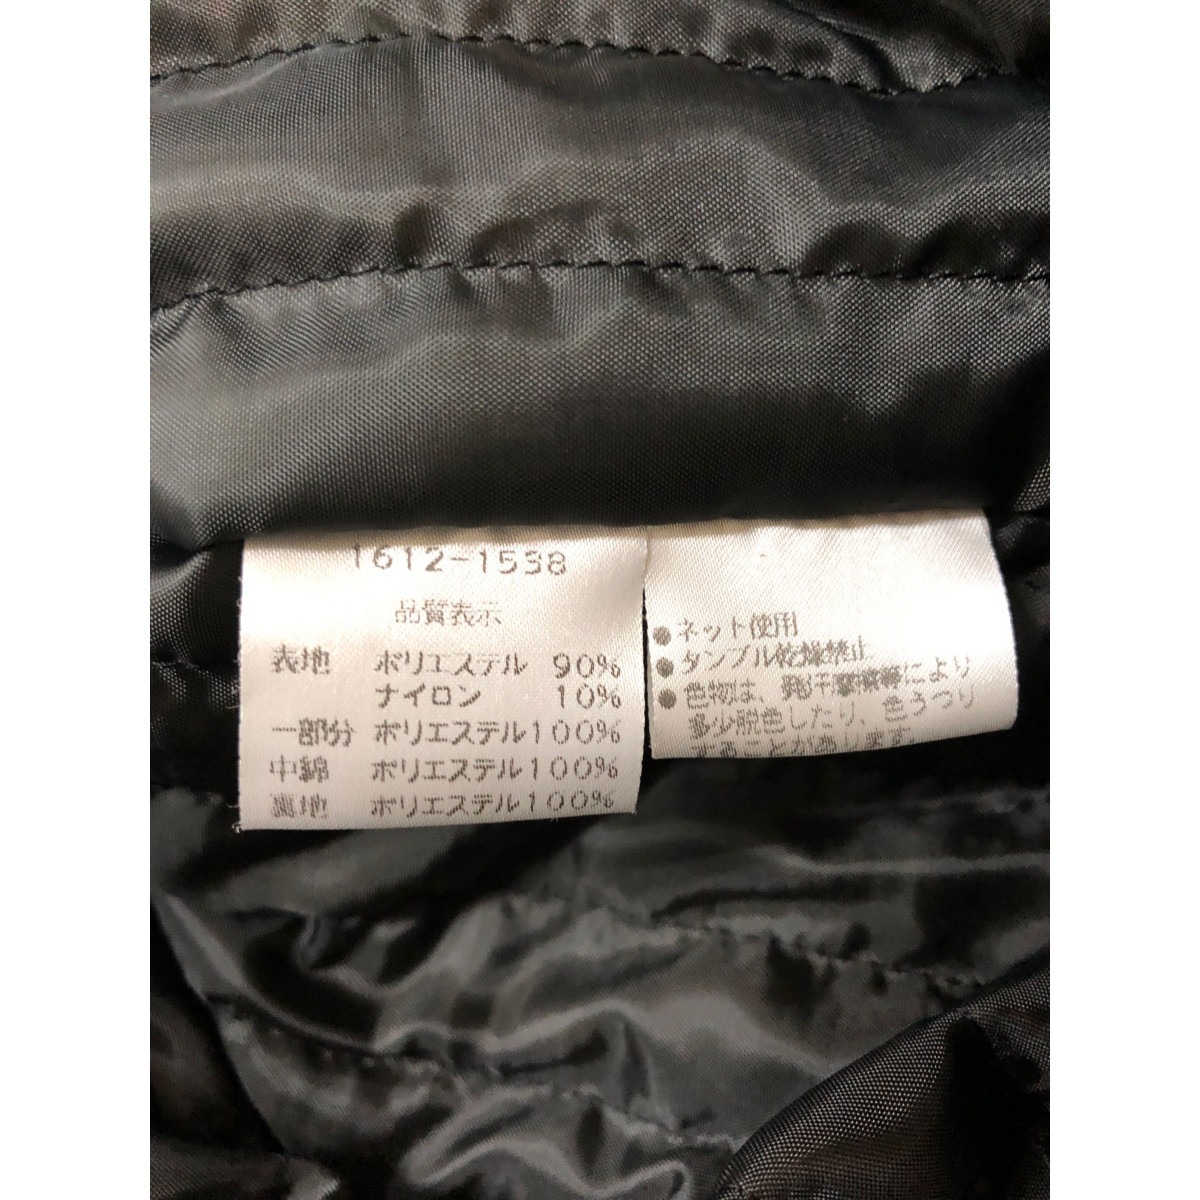 0 PIASPORTS  мужской   пиджак   размер   неизвестный  1612-1538   серый × черный   немного  царапины  и  загрязнение  есть 